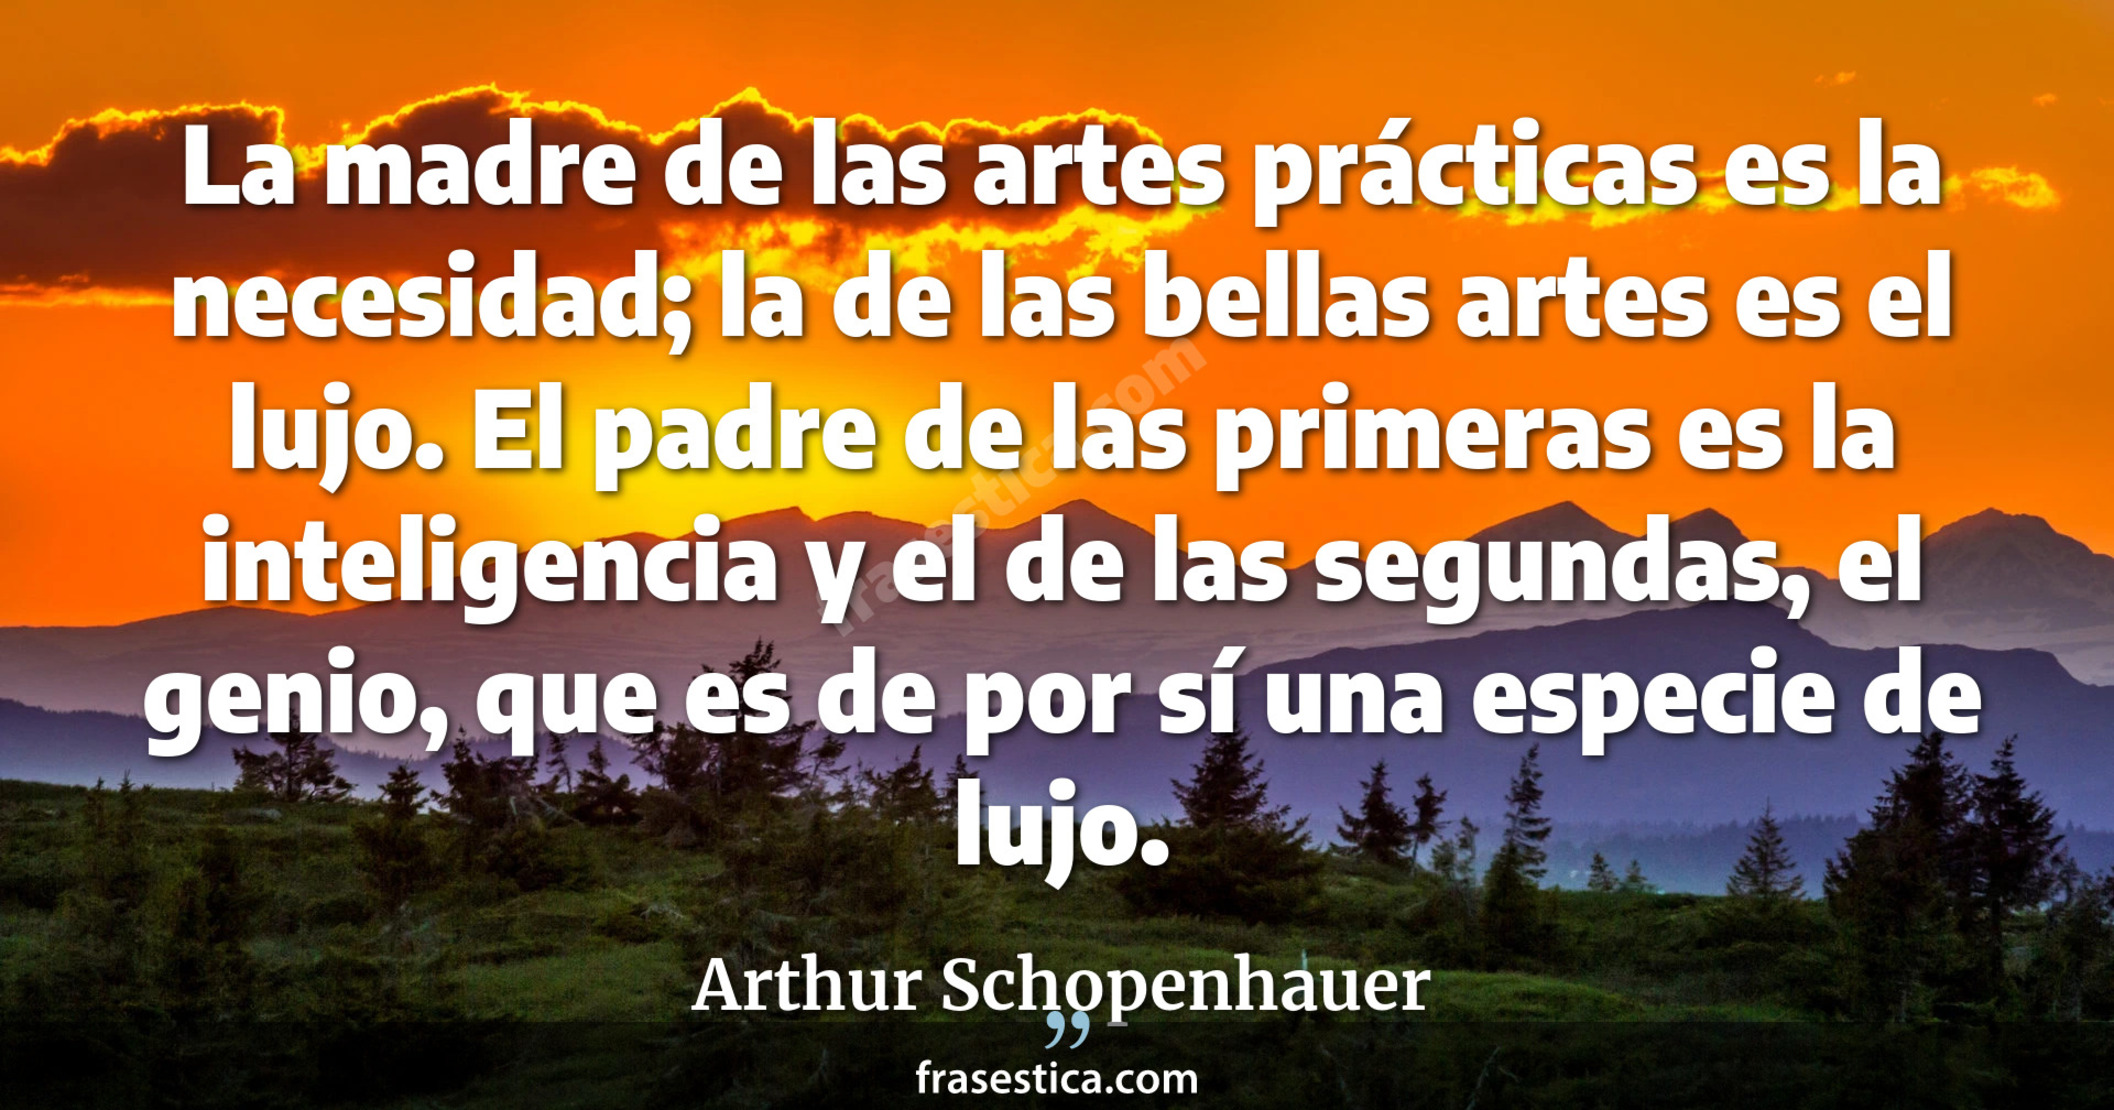 La madre de las artes prácticas es la necesidad; la de las bellas artes es el lujo. El padre de las primeras es la inteligencia y el de las segundas, el genio, que es de por sí una especie de lujo. - Arthur Schopenhauer